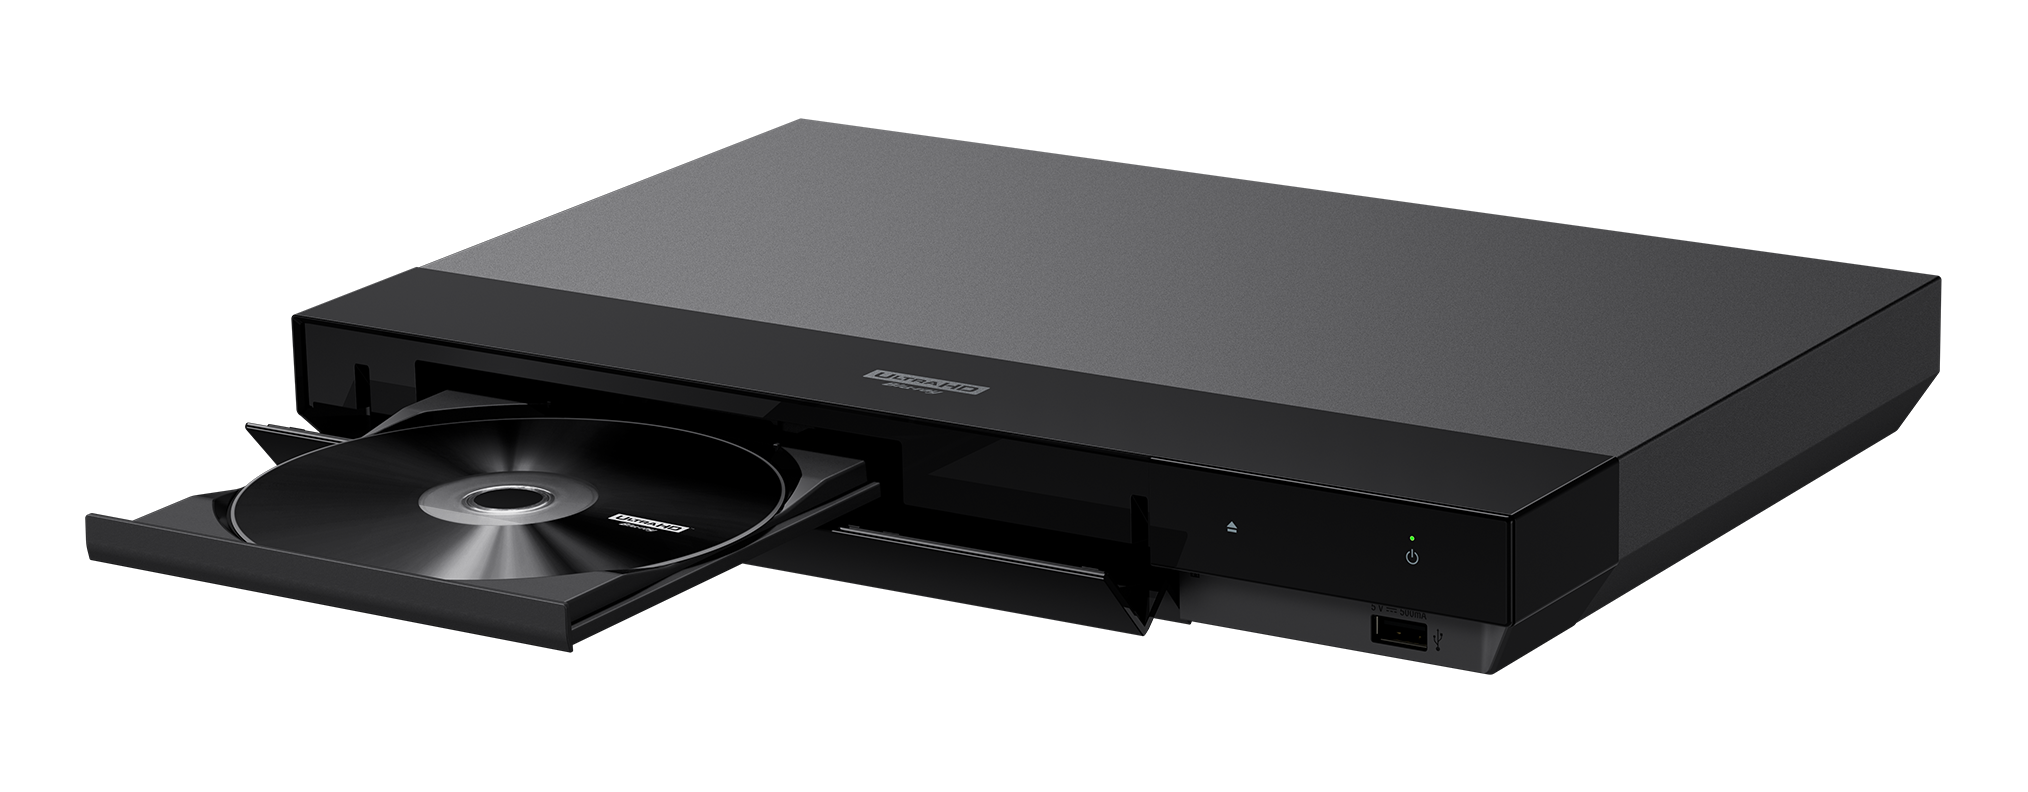 Odtwarzacz Blu-ray Sony 4K z WiFi | UBP-X700